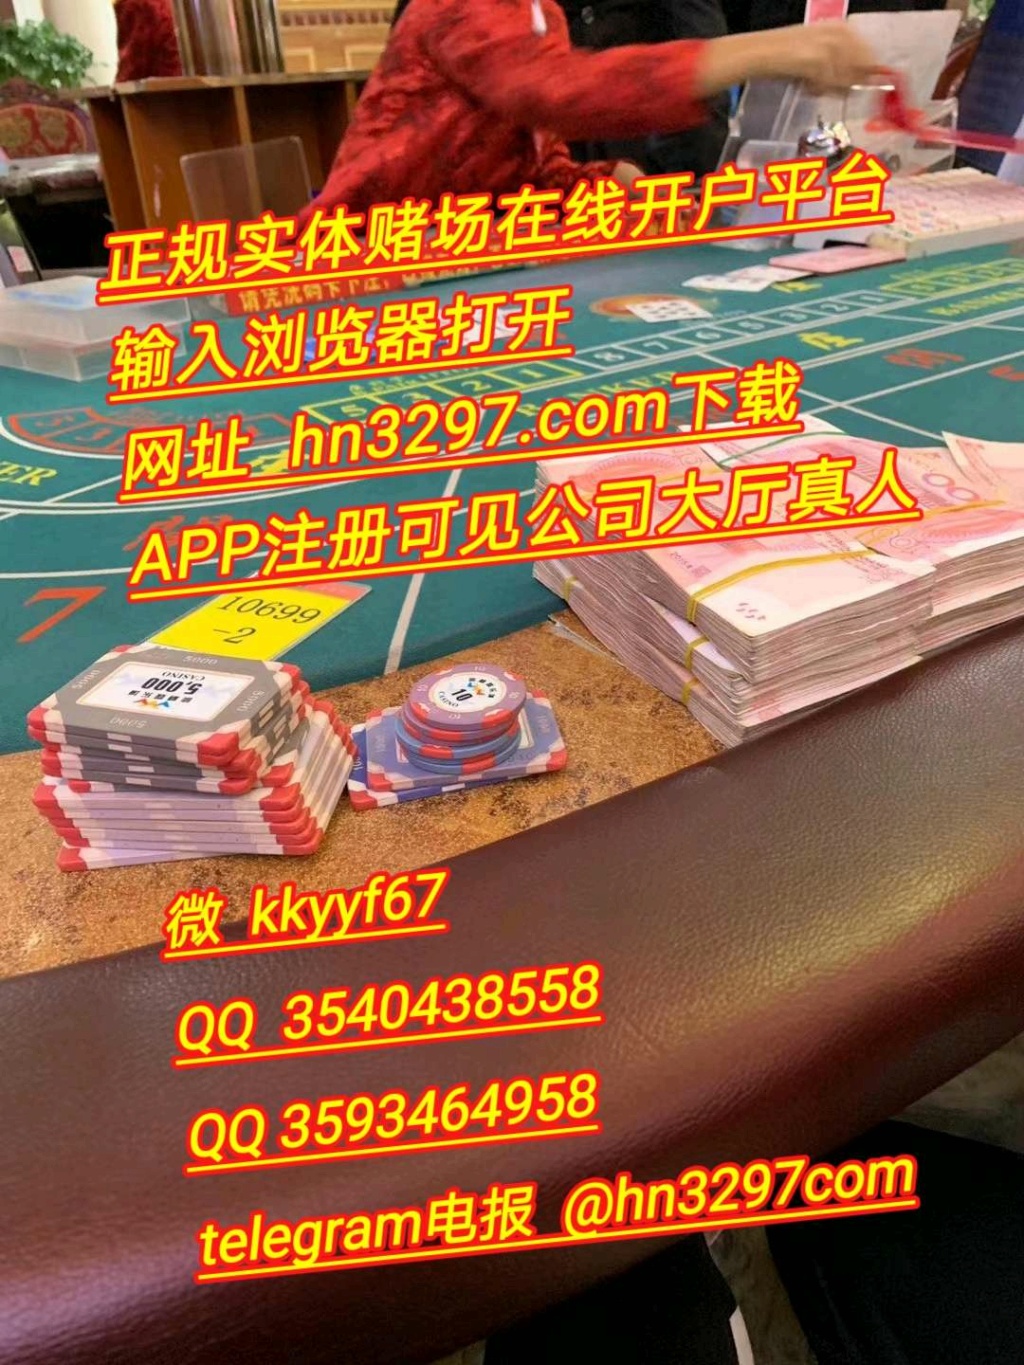 缅甸华纳国际赌场官网  hn3297.com 16519813